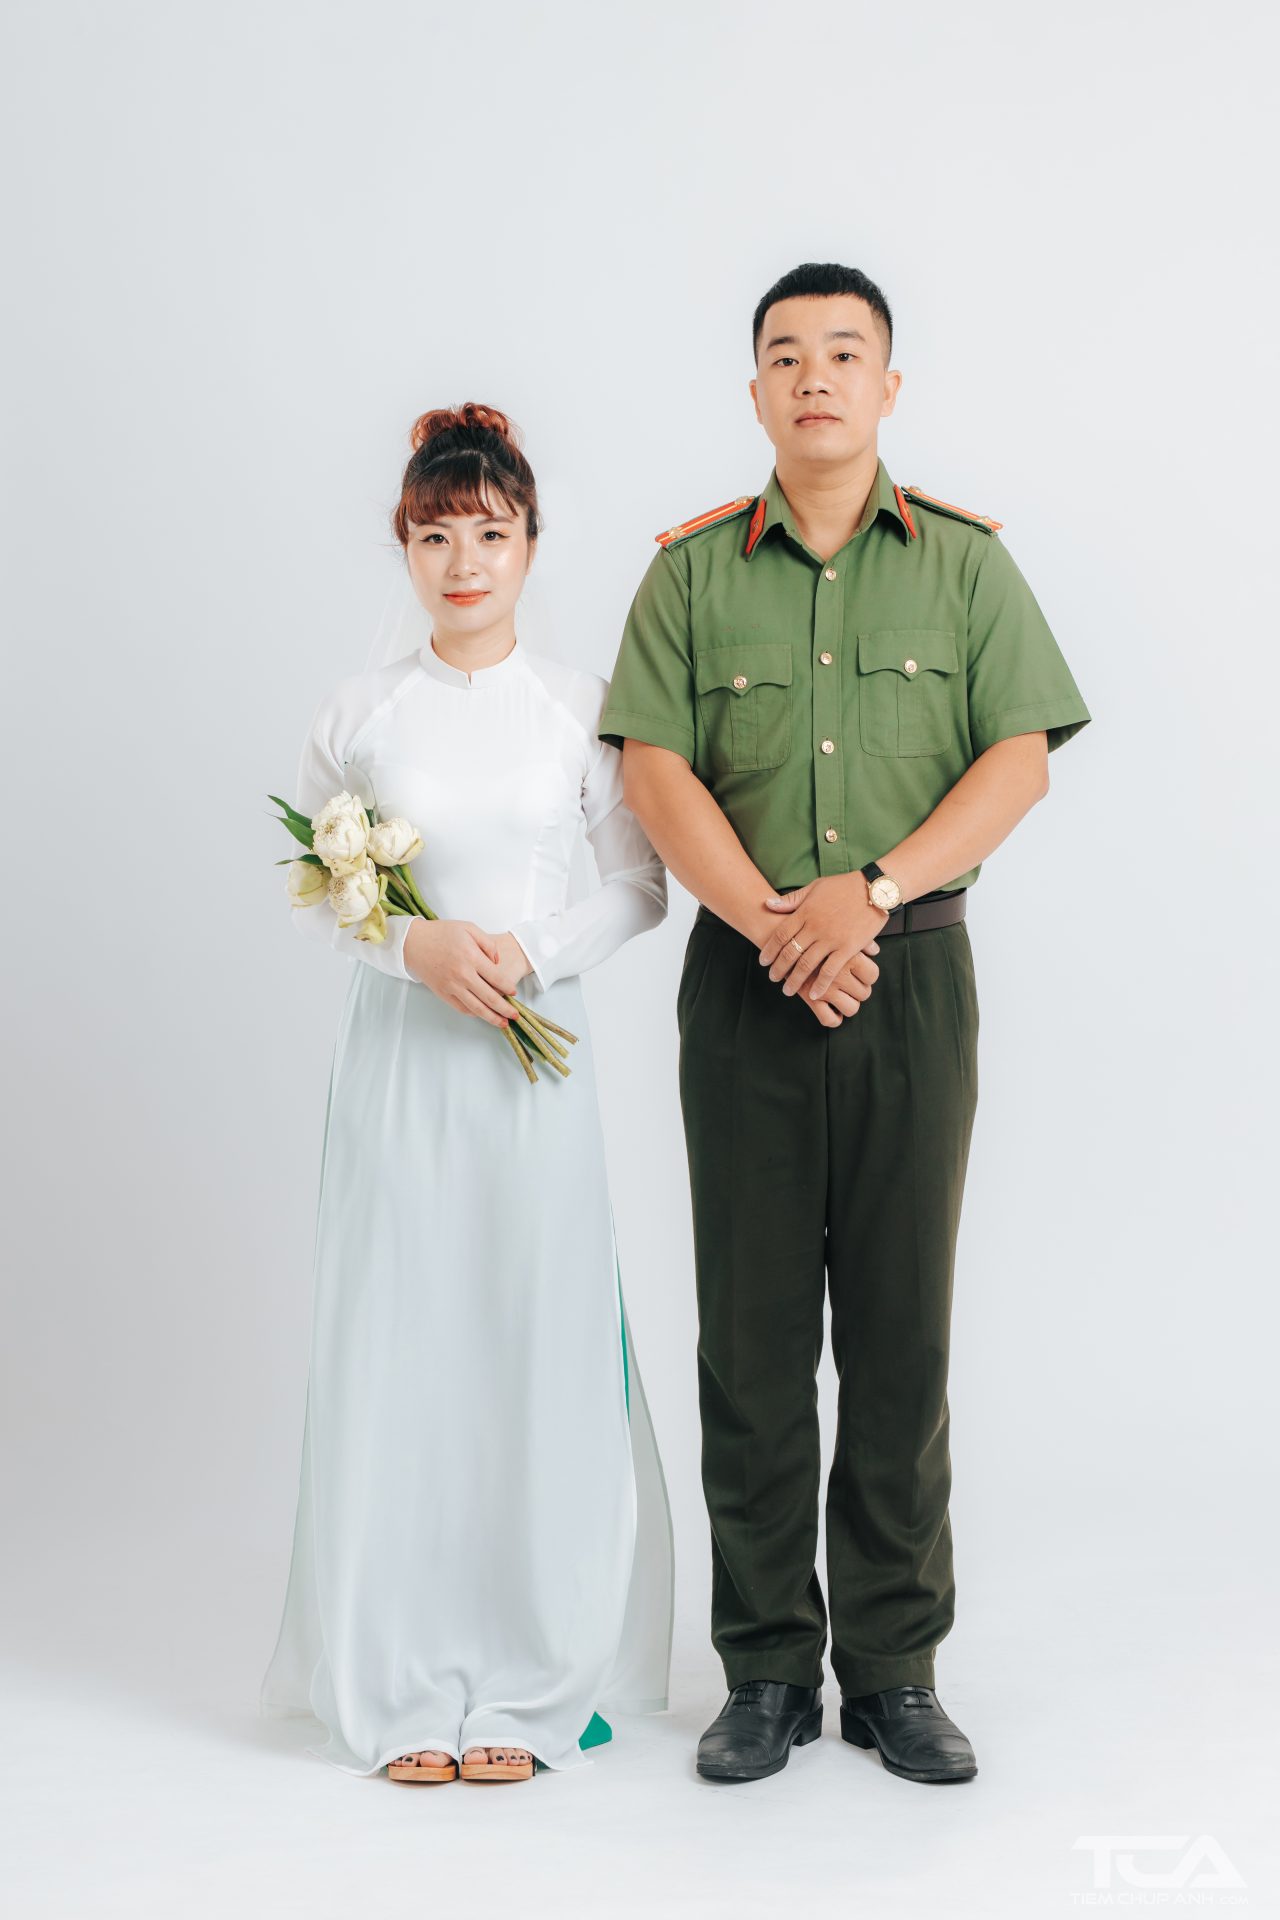 Ảnh cưới quân phục bộ đội luôn là điểm nhấn và sự khác biệt đến hoàn toàn cho ngày trọng đại này. Hãy đến xem bộ sưu tập ảnh cưới quân phục bộ đội của chúng tôi và cảm nhận sự đẹp đẽ và toàn vẹn về tình yêu đích thực!